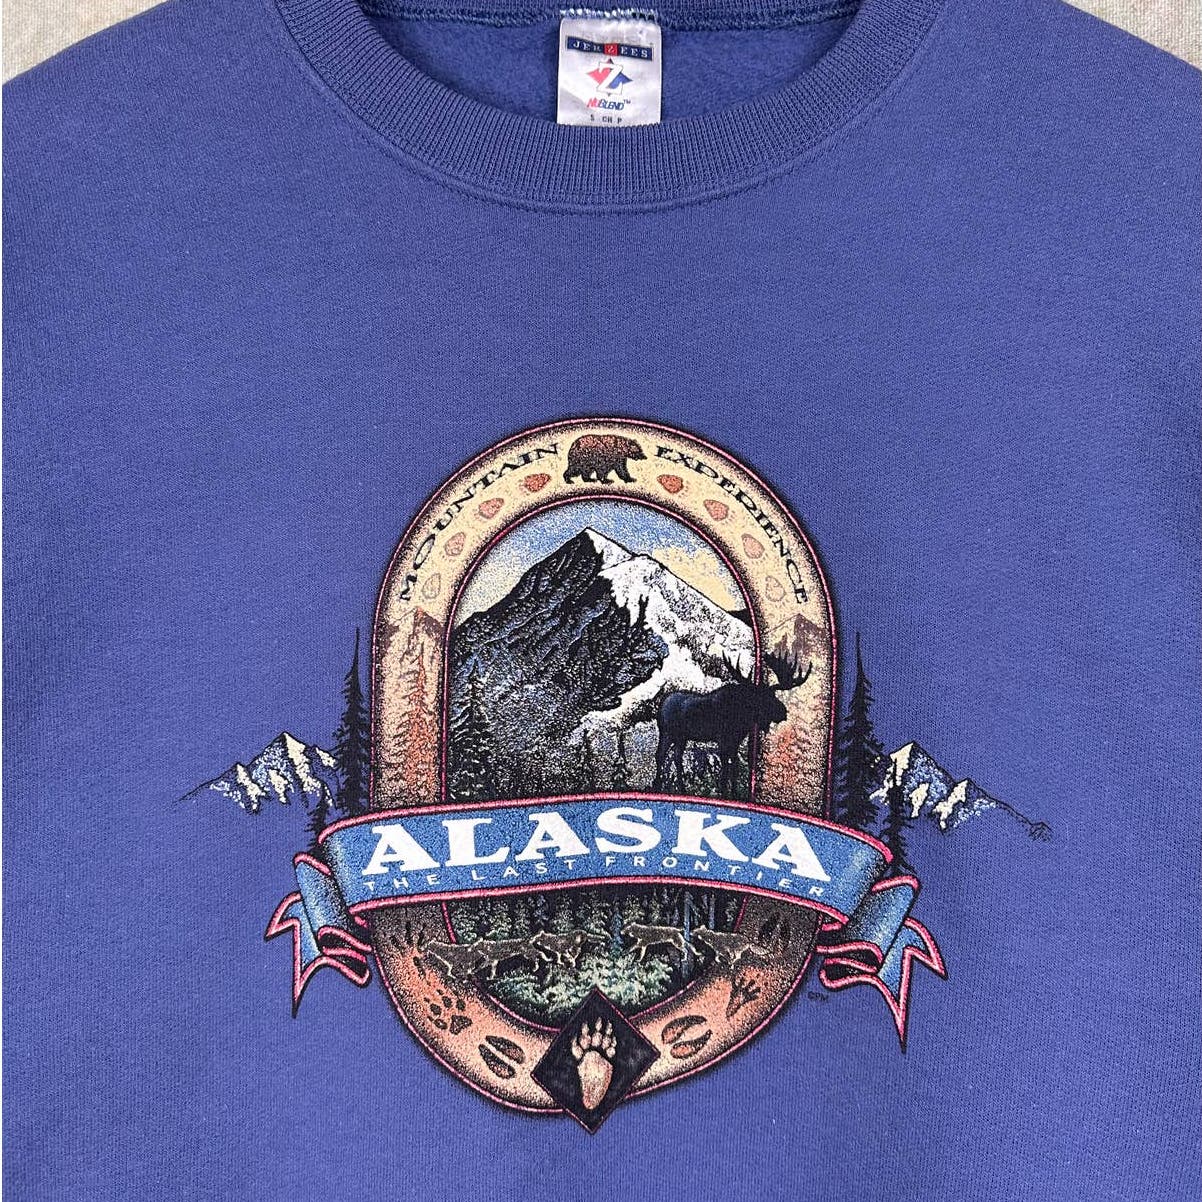 Vintage Alaska Crewneck Sweatshirt S